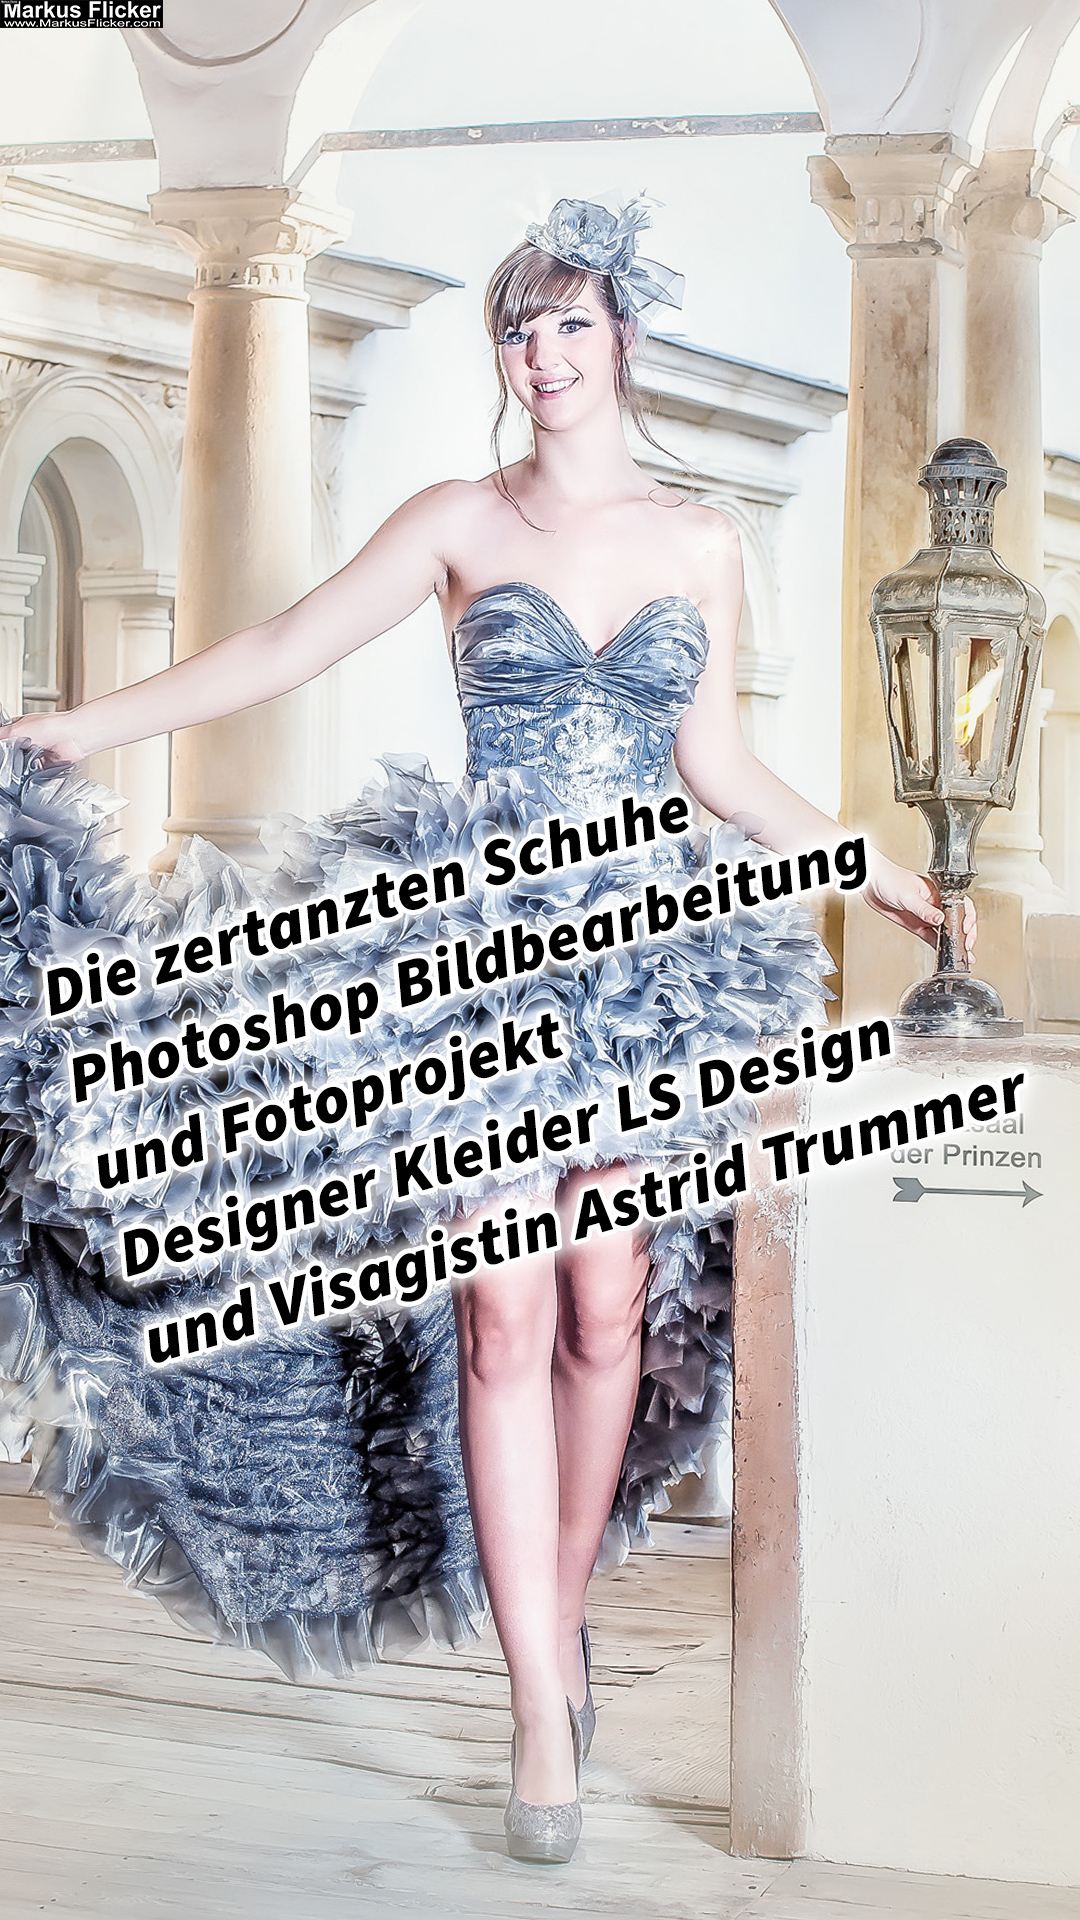 Die zertanzten Schuhe Photoshop Bildbearbeitung und Fotoprojekt Designer Kleider LS Design und Visagistin Astrid Trummer